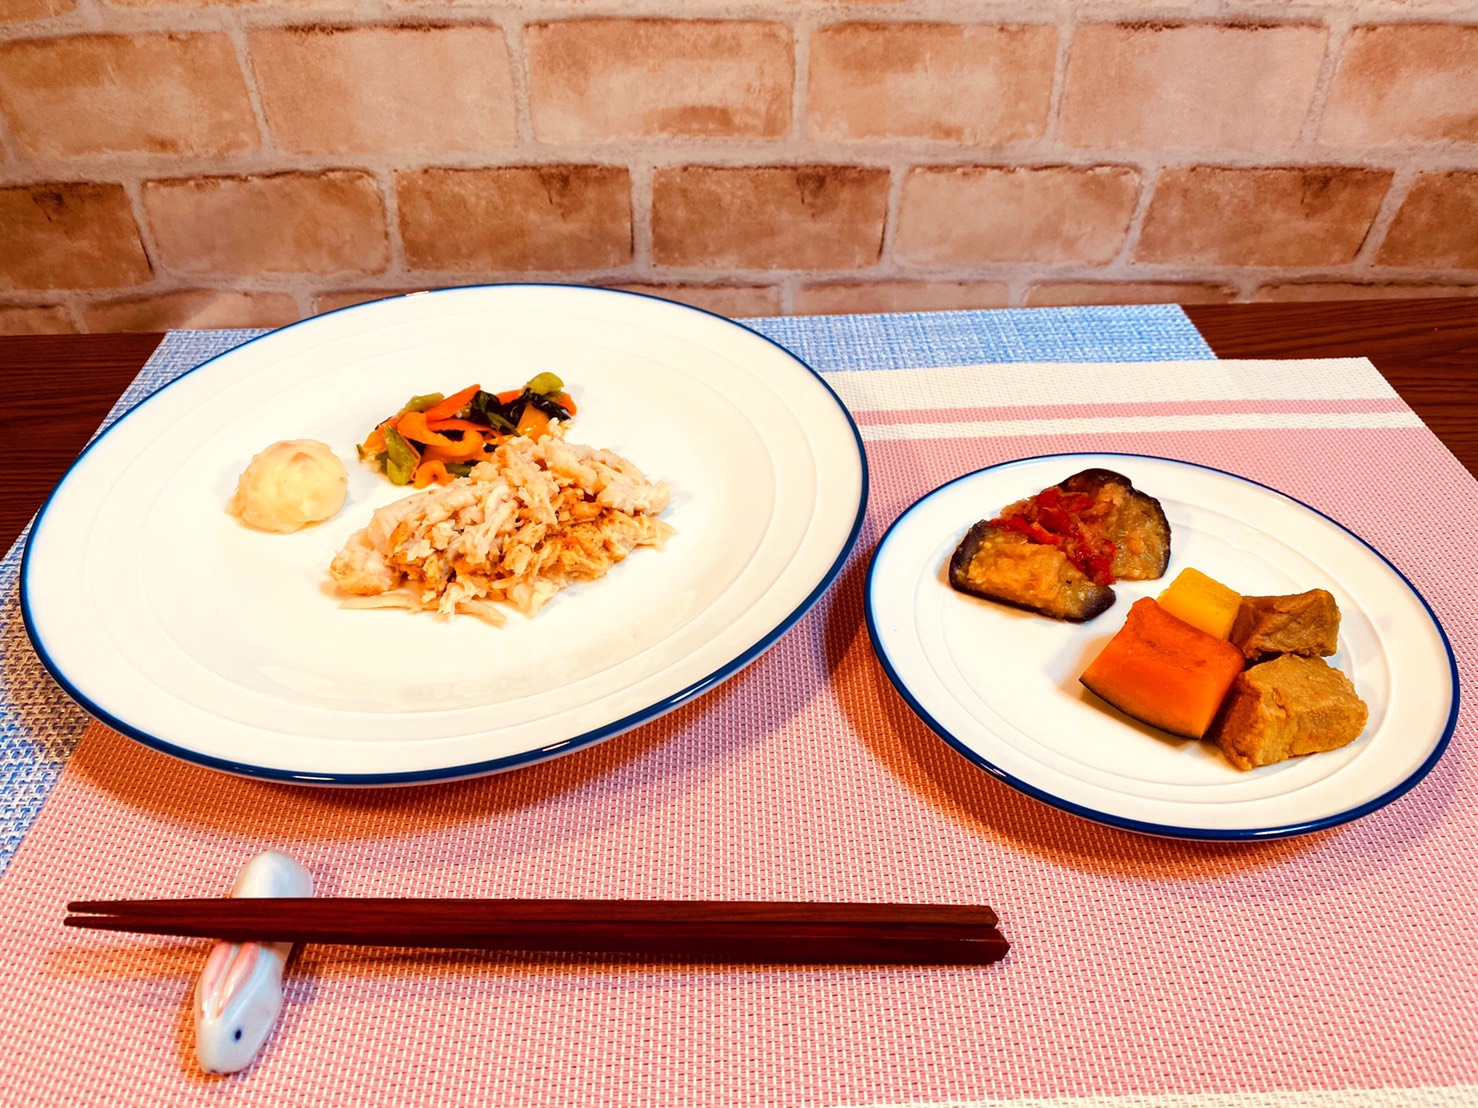 (メニューの一例)バンバンジー、豚肉と野菜の煮物、揚げナスのポン酢おろしかけ、ポテトサラダ